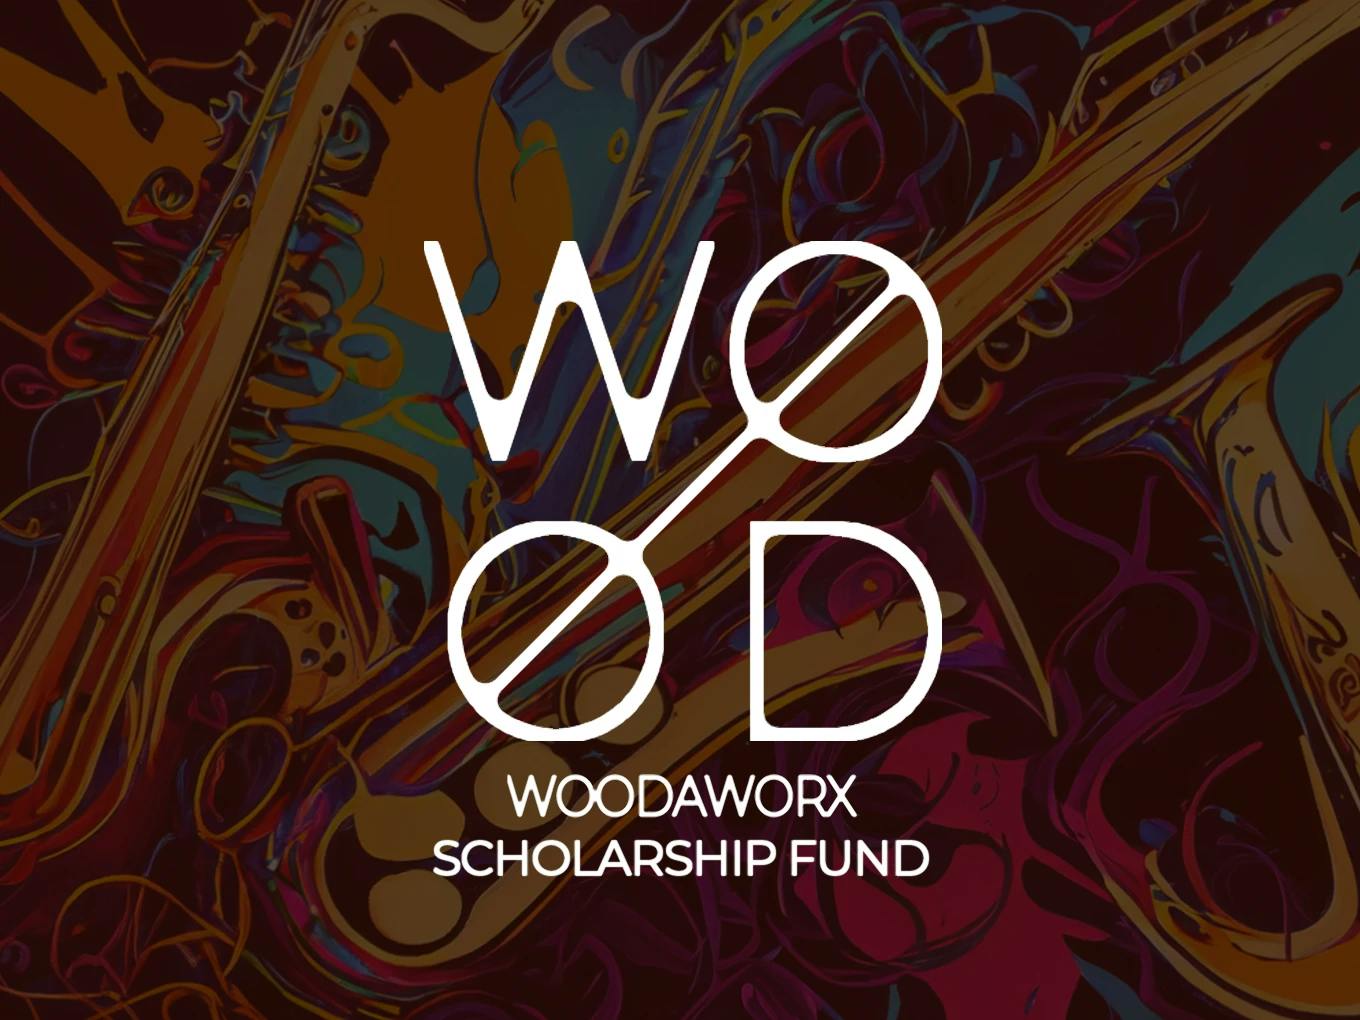 WoodaWorx Scholarship Fund